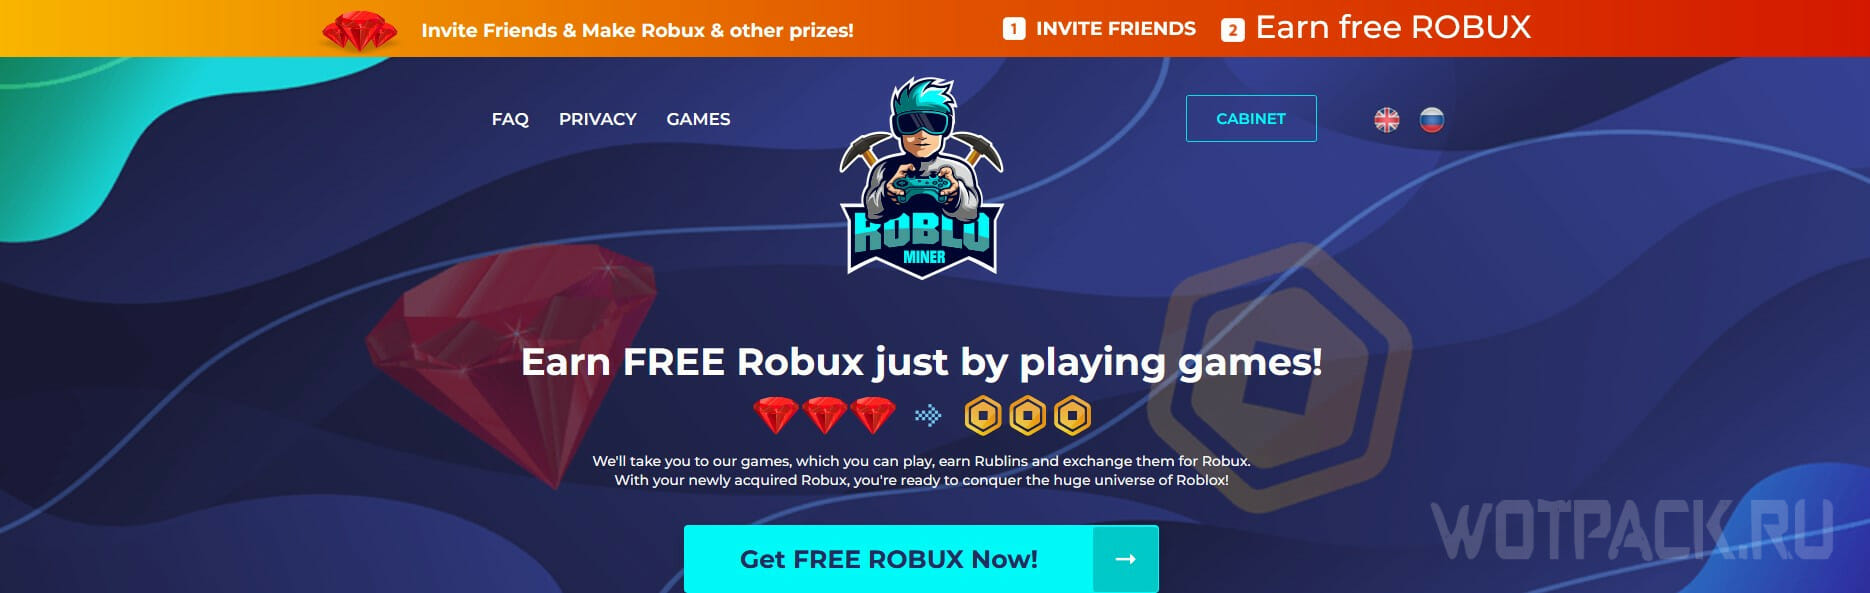 CONTA ROBLOX(+3K DE ROBUX GASTOS) - Roblox - Outros jogos Roblox